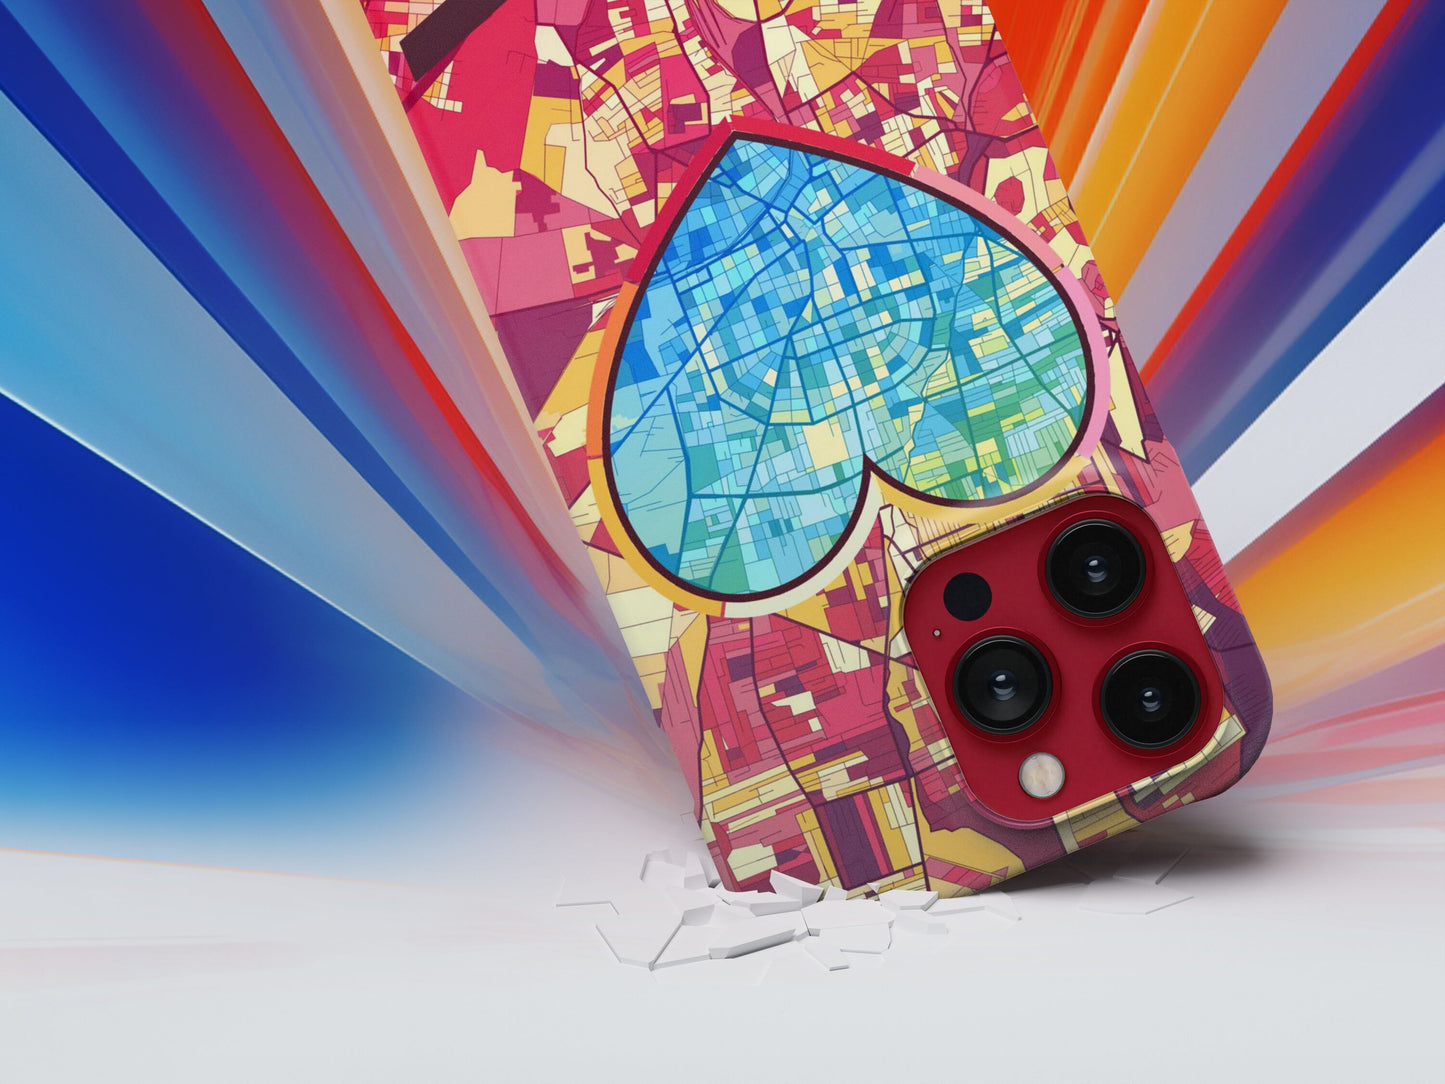 Αχαρνες Ελλαδα slim phone case with colorful icon. Birthday, wedding or housewarming gift. Couple match cases.